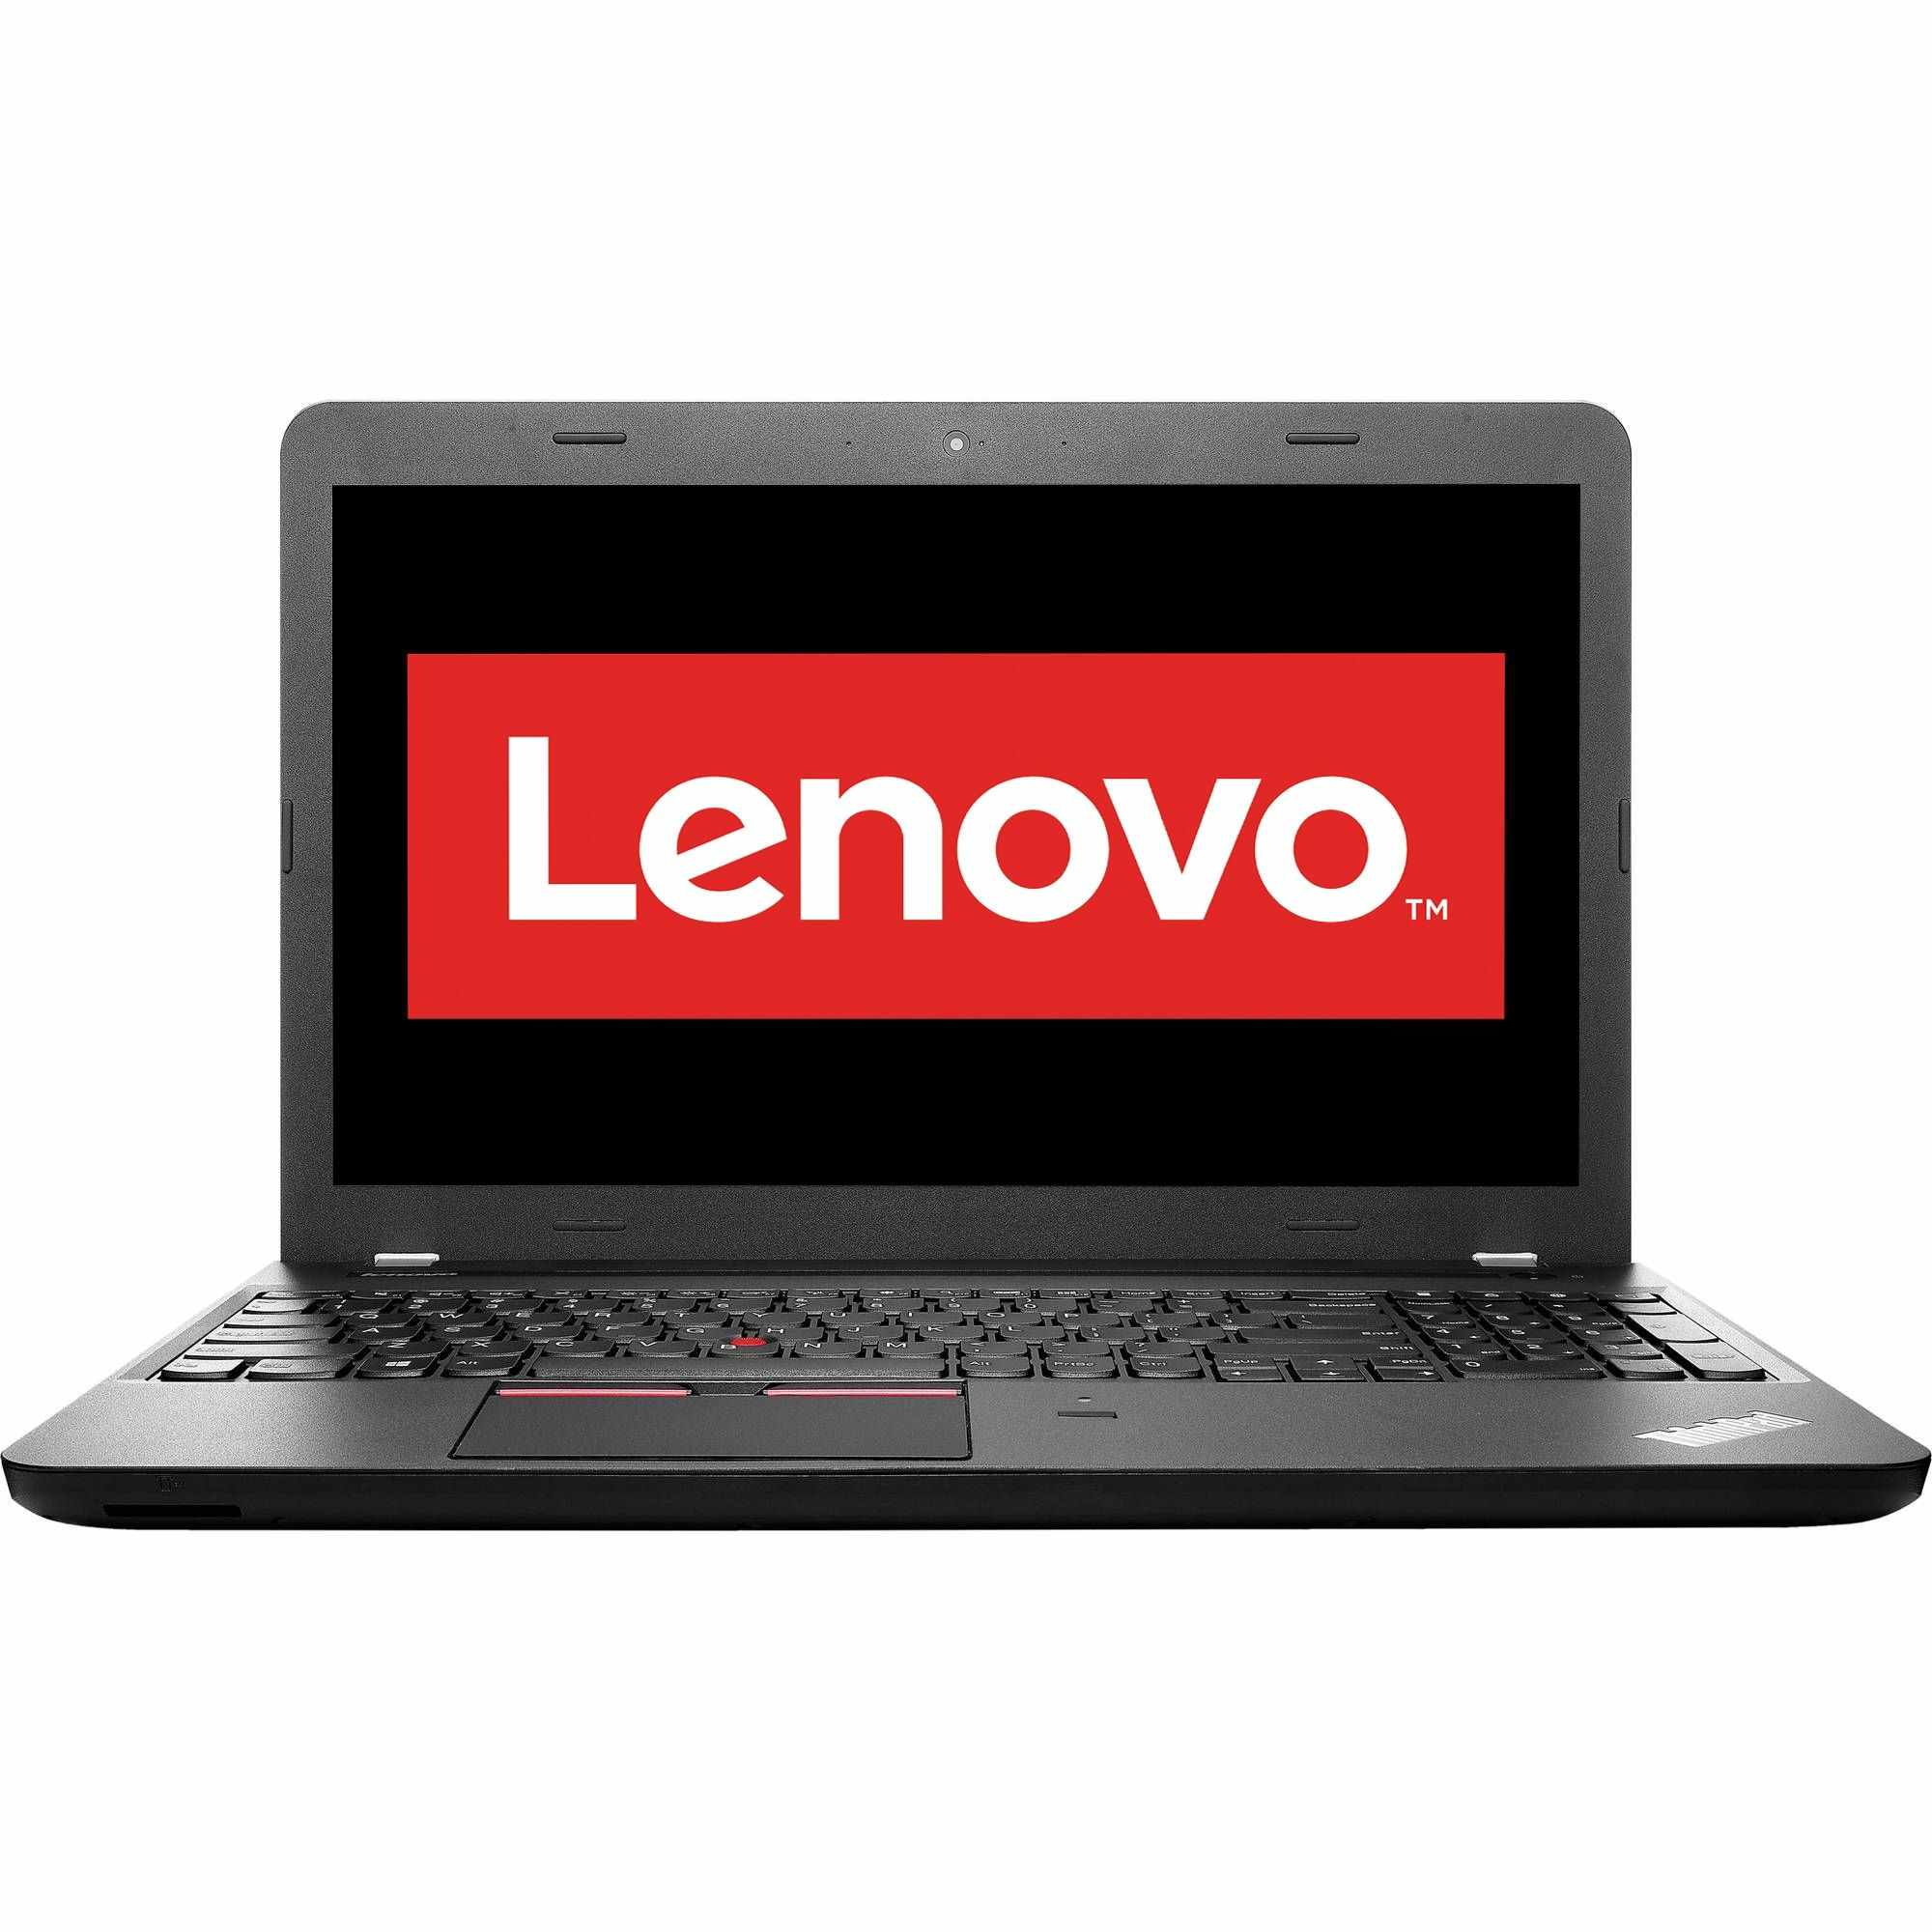 Laptop Lenovo ThinkPad E550, Intel Core i5-5200U 2.20GHz, 8GB DDR3, 500GB SATA, DVD-RW, 15.6 Inch, Webcam